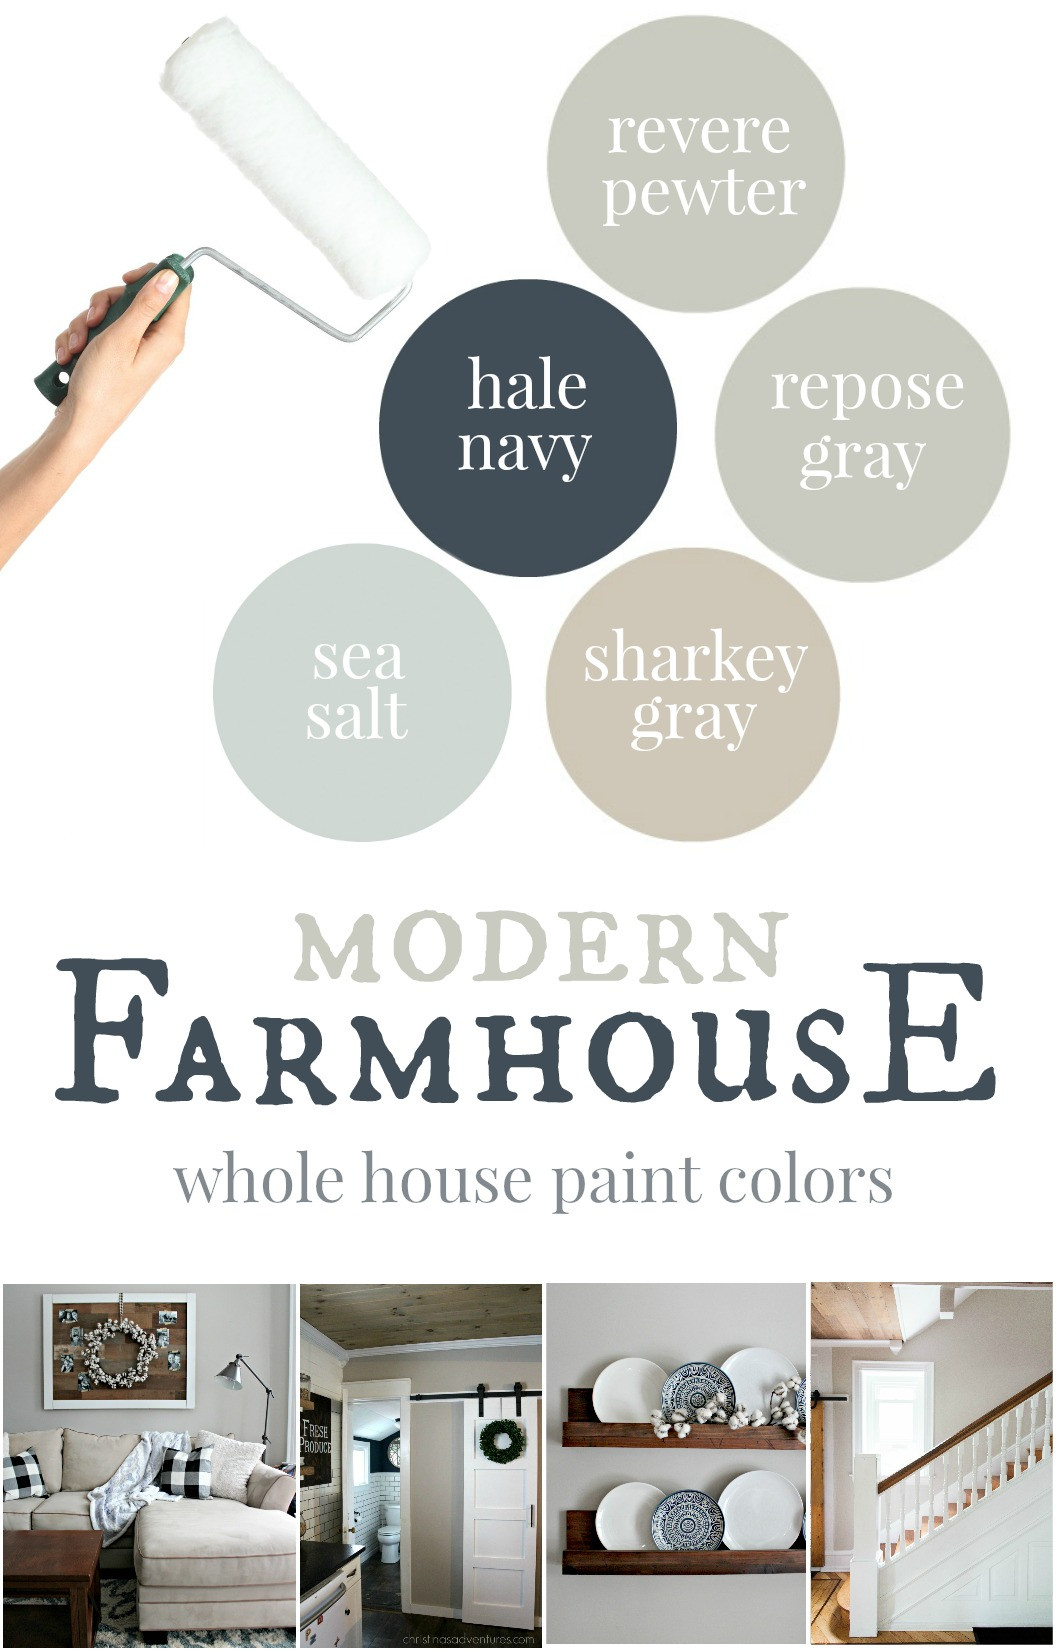 Best ideas about Farmhouse Paint Colors
. Save or Pin Our house Modern Farmhouse Paint Colors Christinas Now.